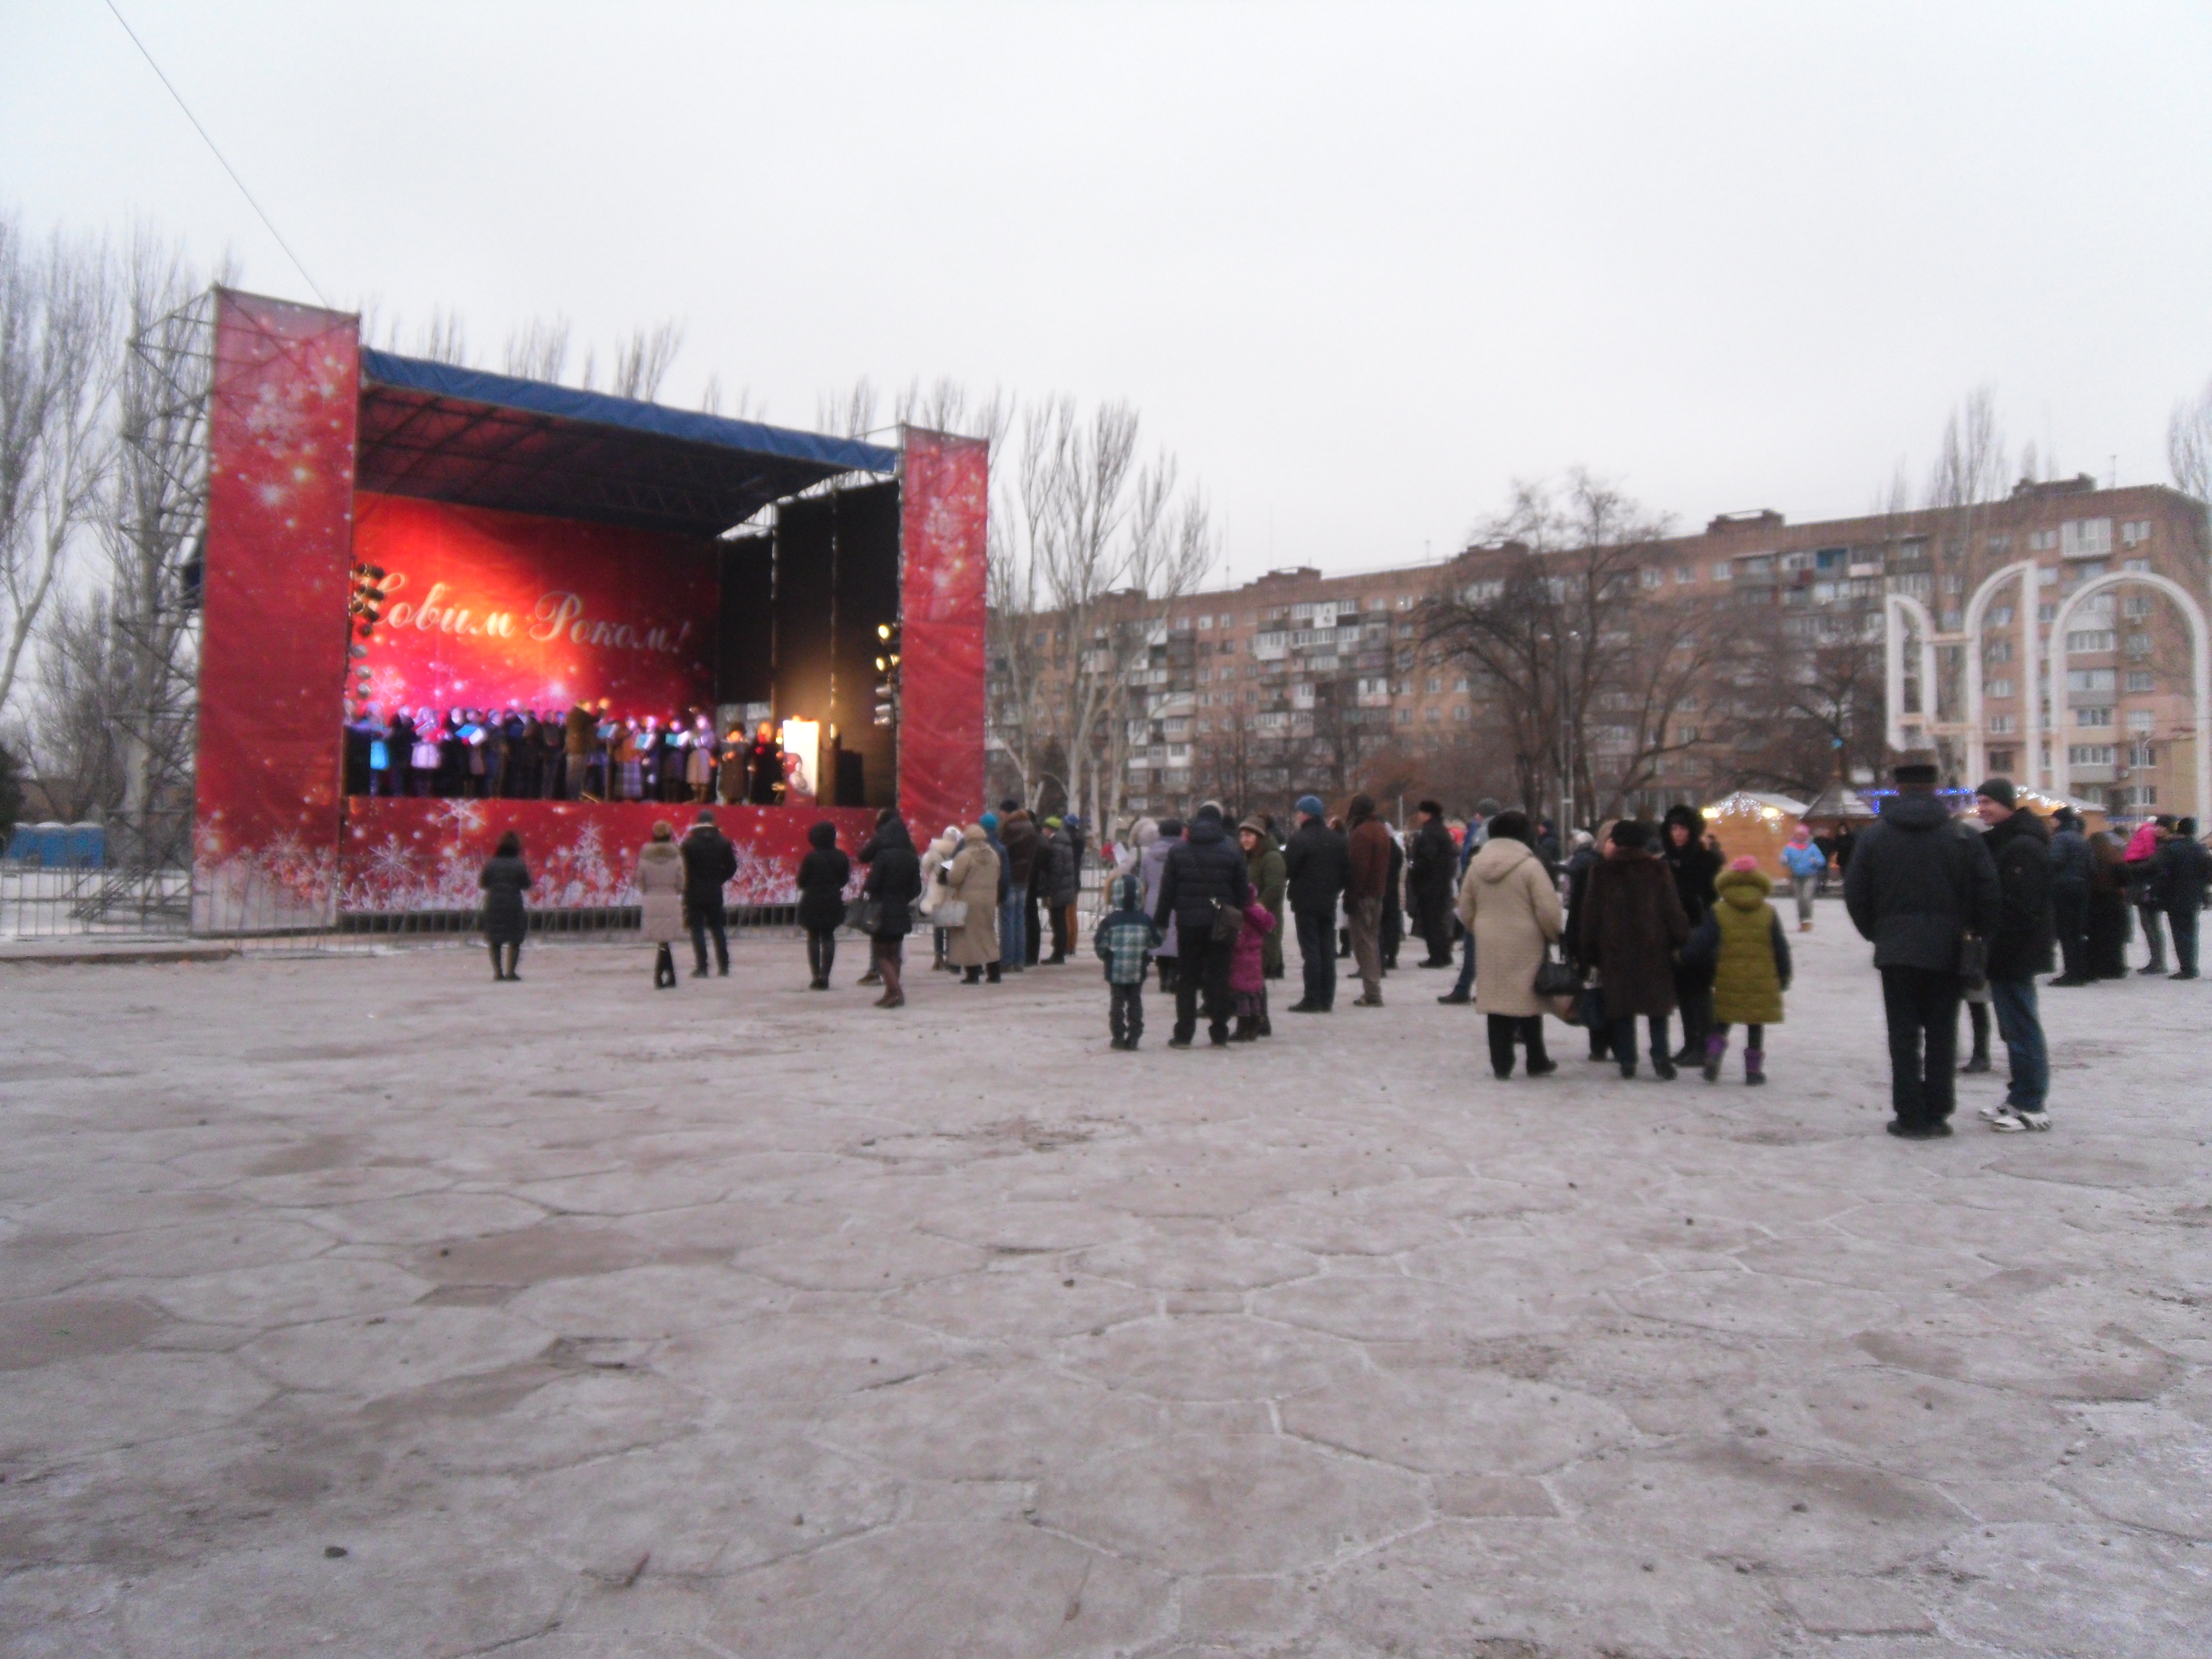 Мишура, бутылки и мусор: как выглядят главные площади Запорожья после новогодних гуляний - ФОТО